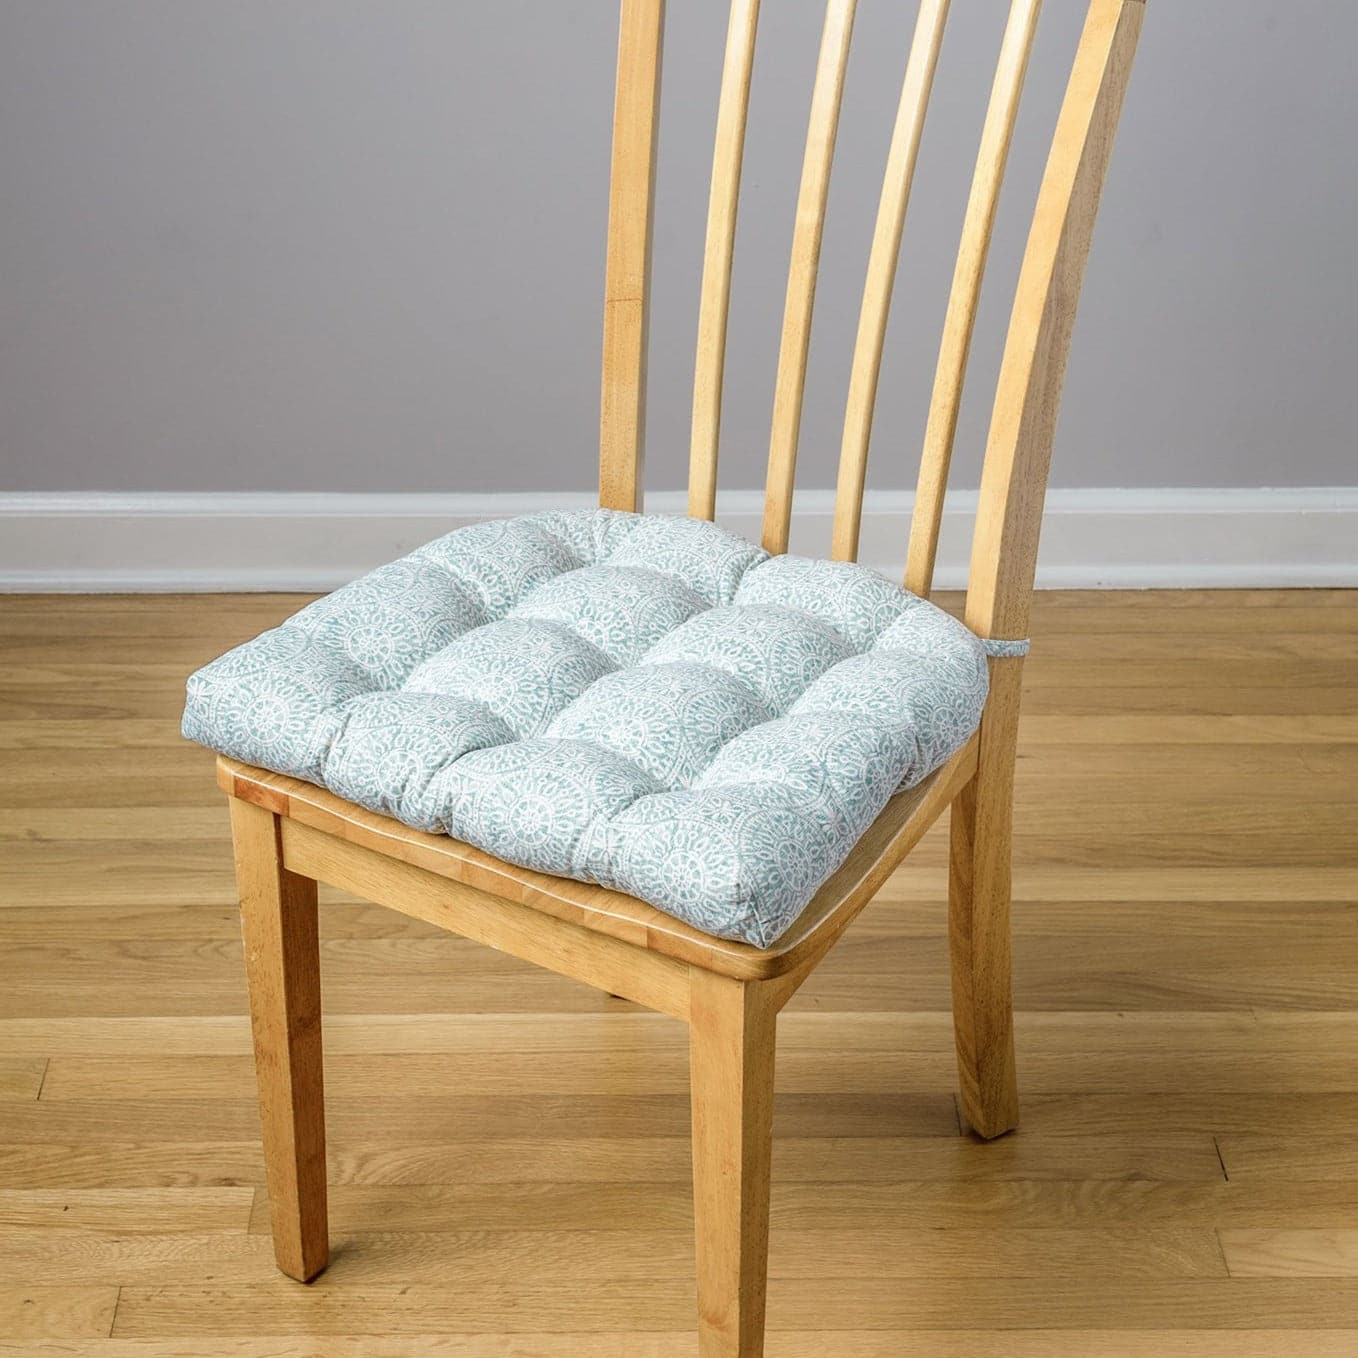 Tibet Aqua Dining Chair Cushions - Barnett Home Decor - Aqua & White - Blue Green